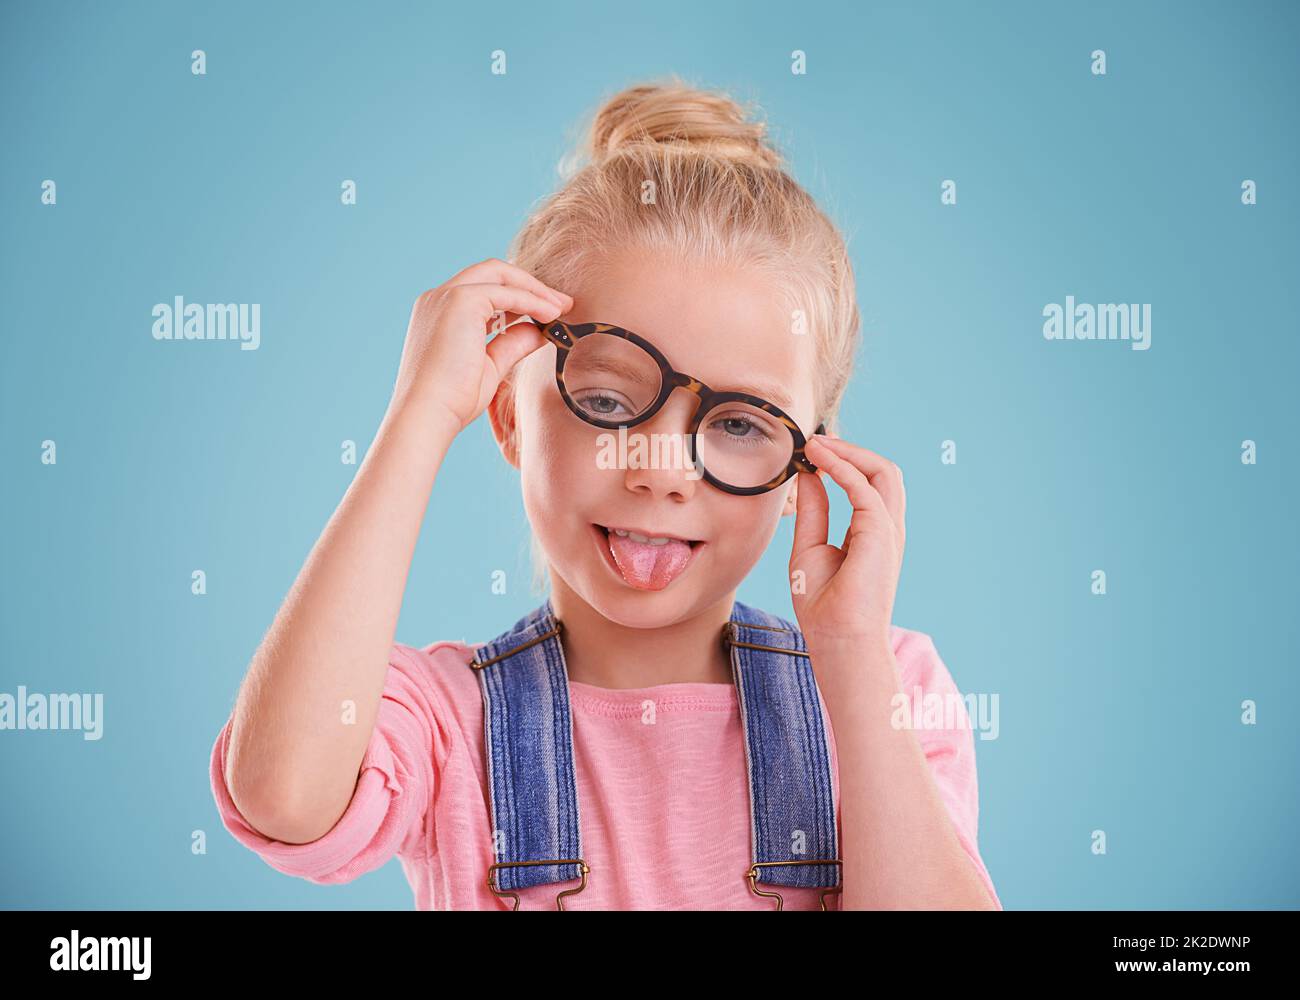 Diese Gläser sind so lustig. Studioaufnahme eines kleinen Mädchens mit einer Hipster-Brille auf blauem Hintergrund. Stockfoto